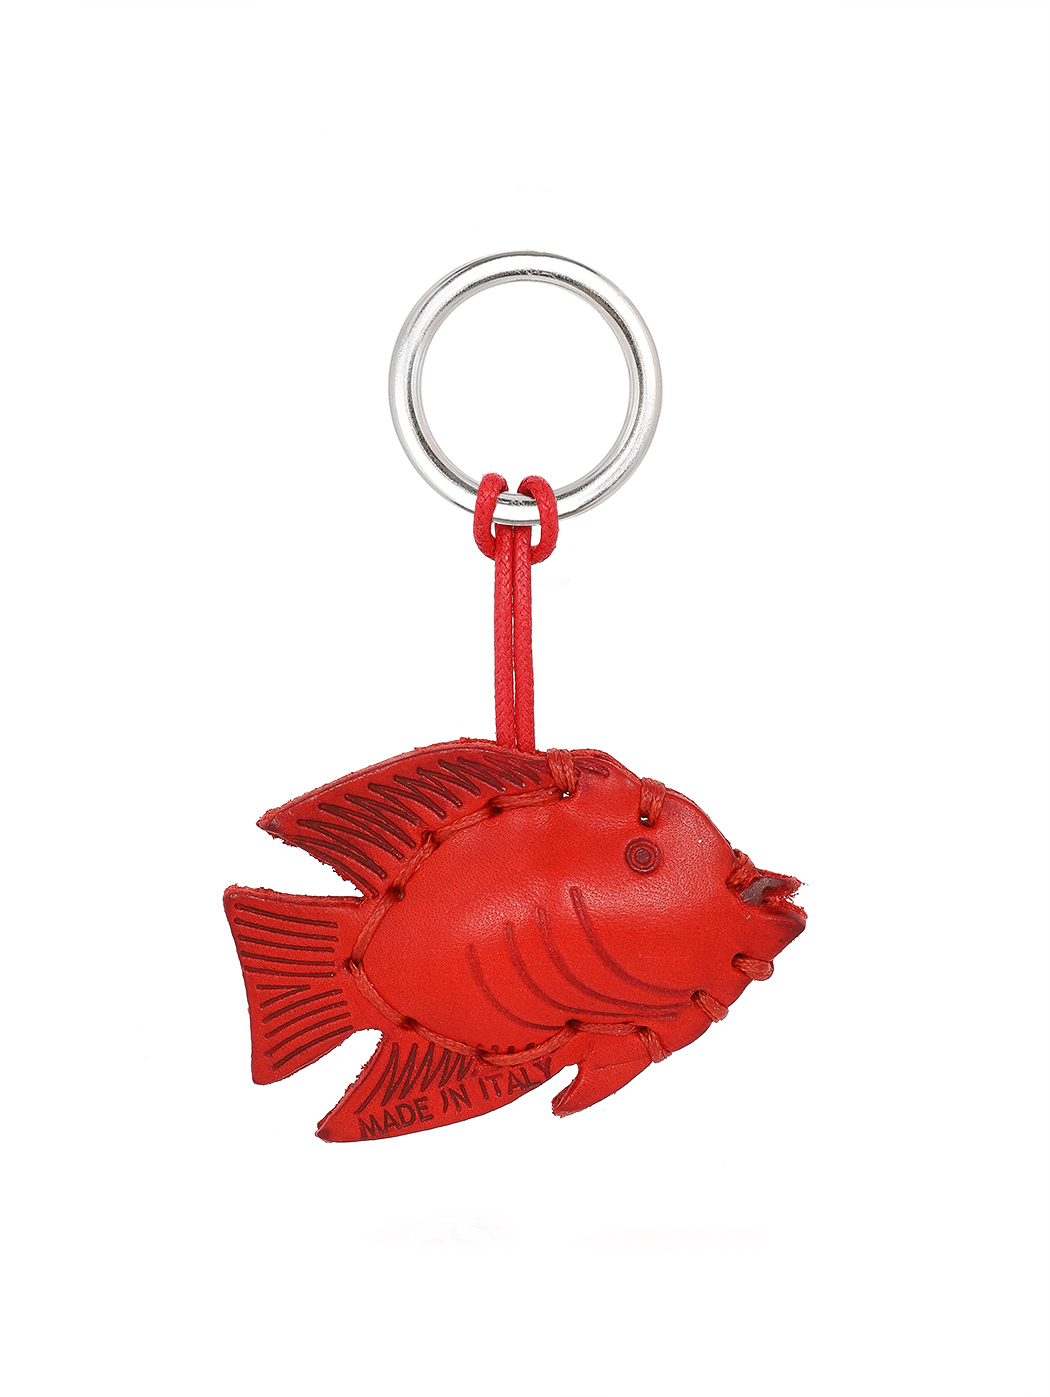 Кожаная ключница Красная рыба красный